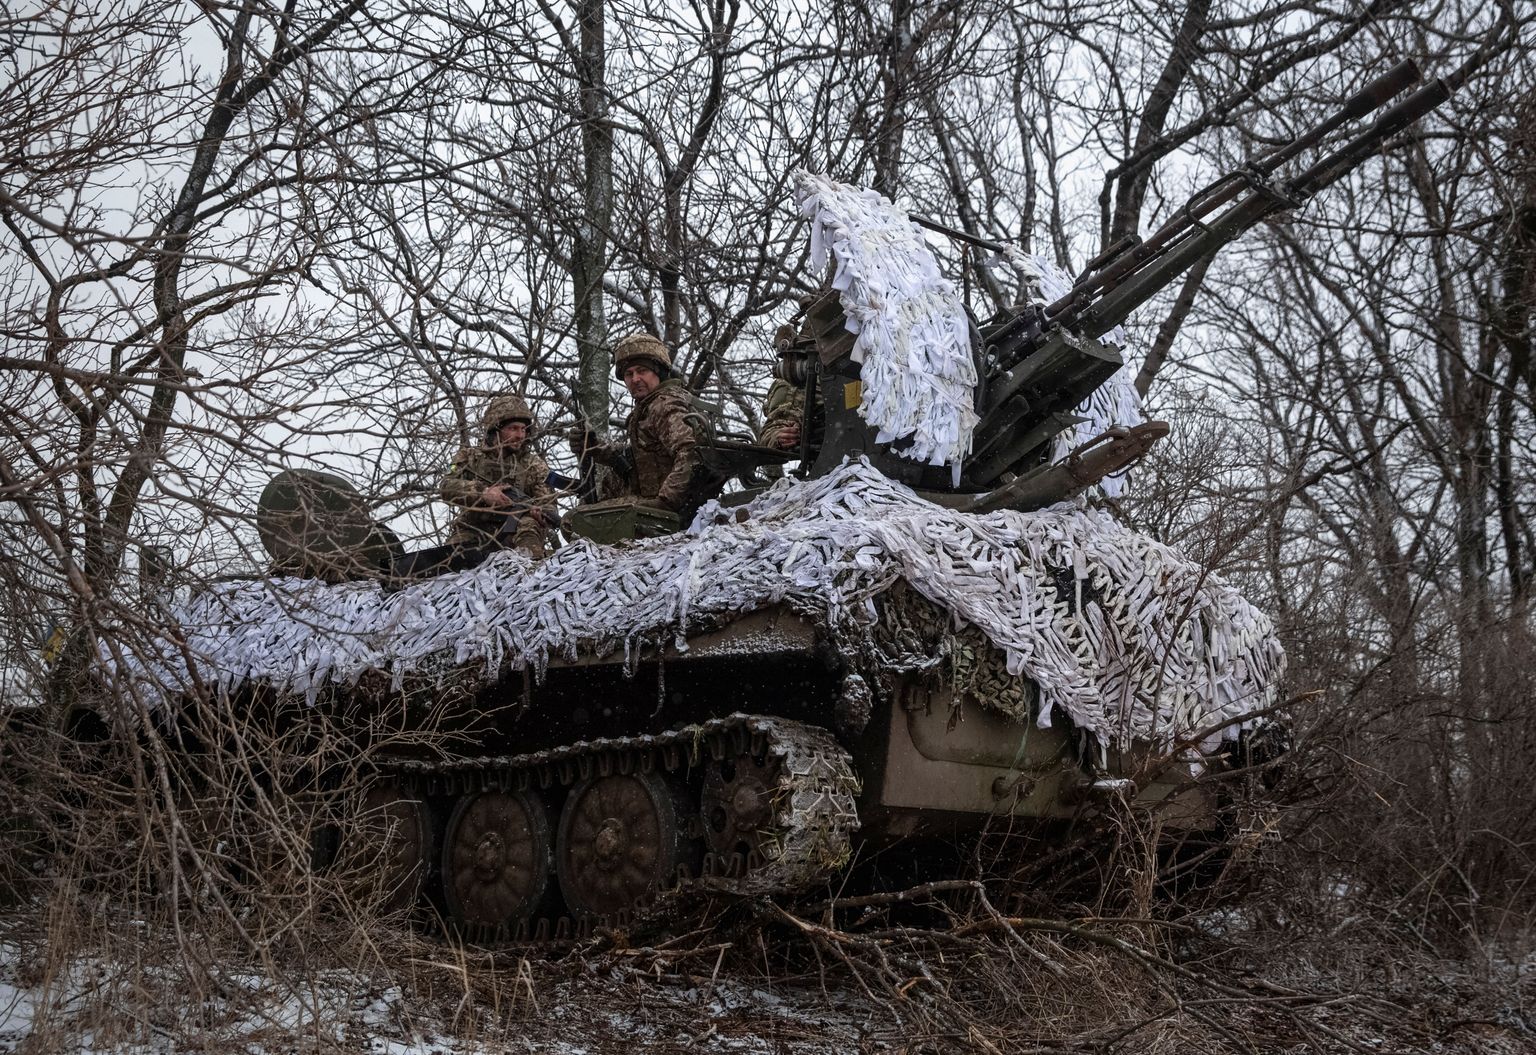 Ukraina sõdurid Donetski oblastis rindejoone lähedal.